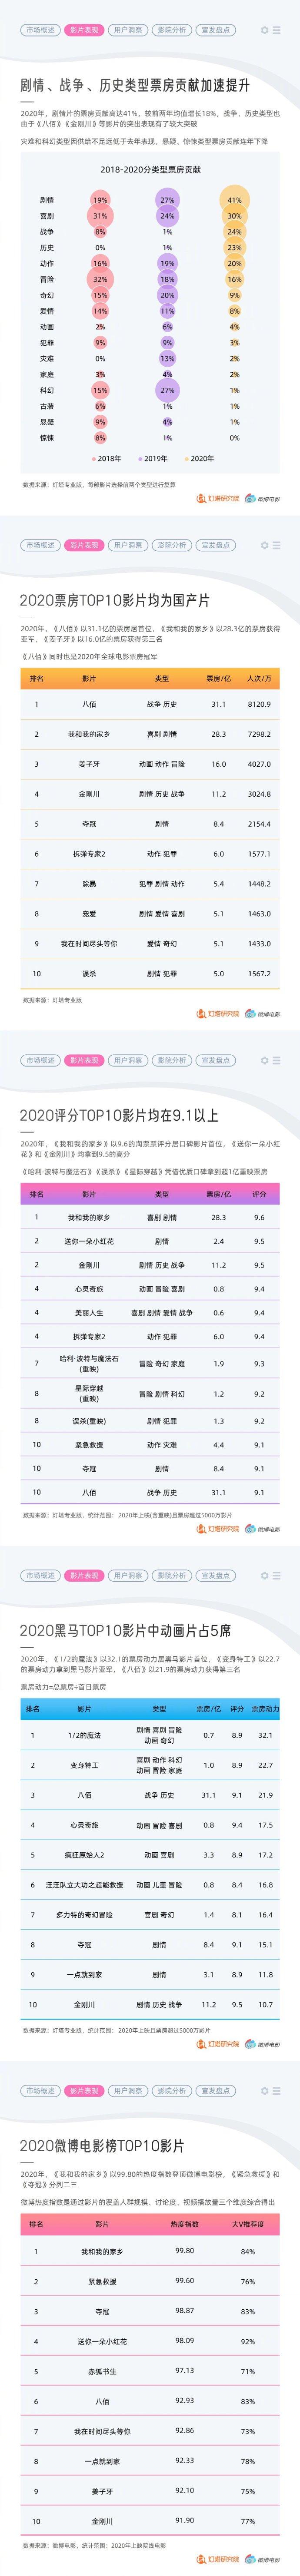 2020中国电影市场年度盘点报告：中国为全球第一票房市场